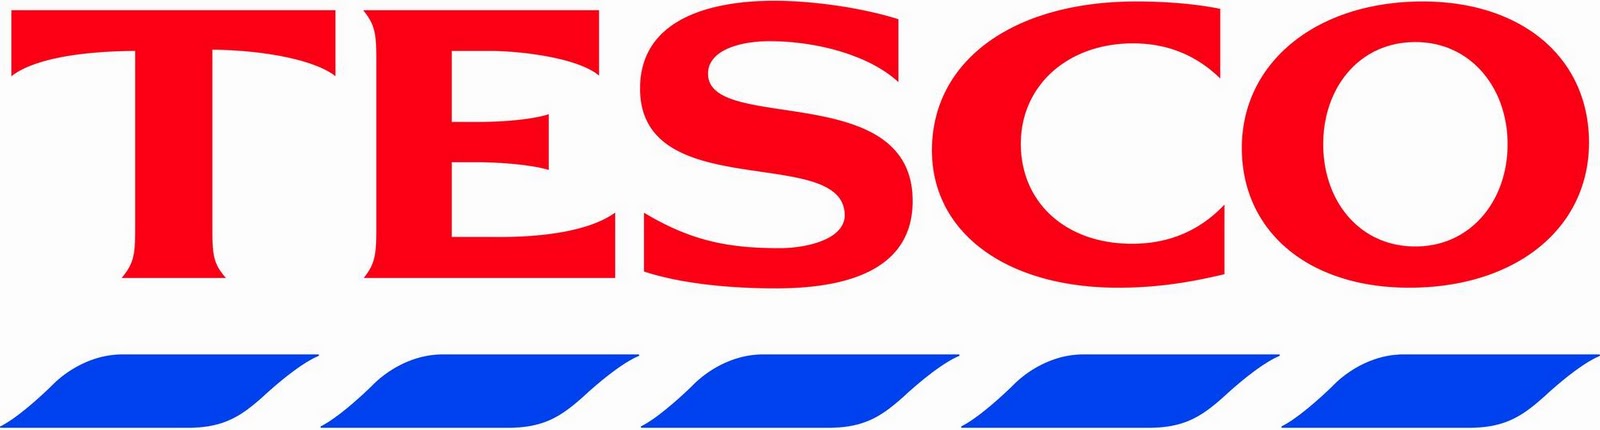 Tesco Logo Png